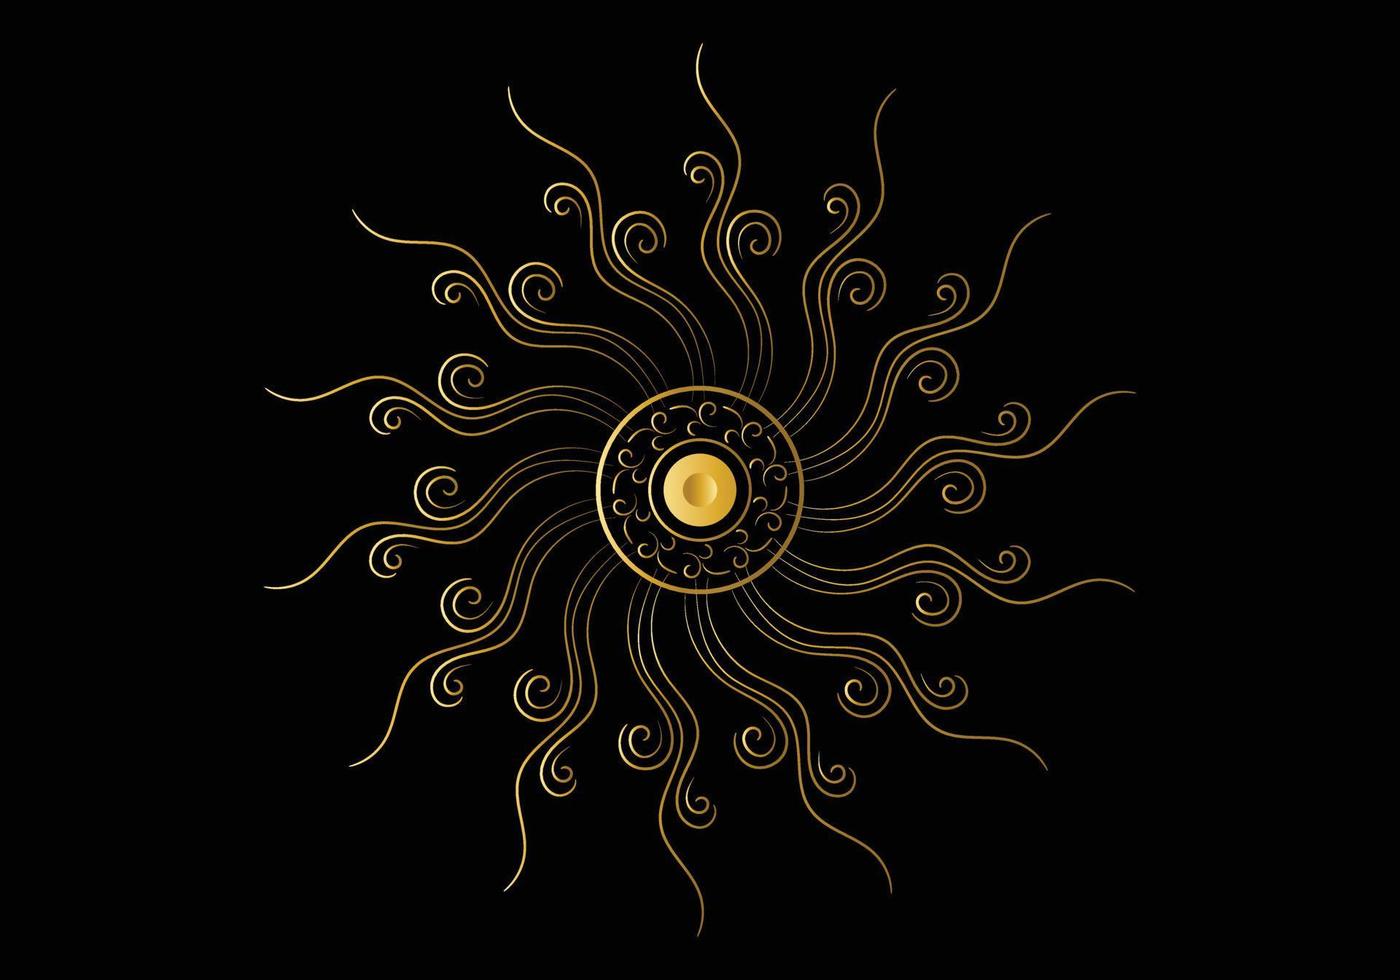 moldura dourada com ornamento em círculo sobre fundo preto. mandala de ouro de luxo, design de desenho à mão. vetor